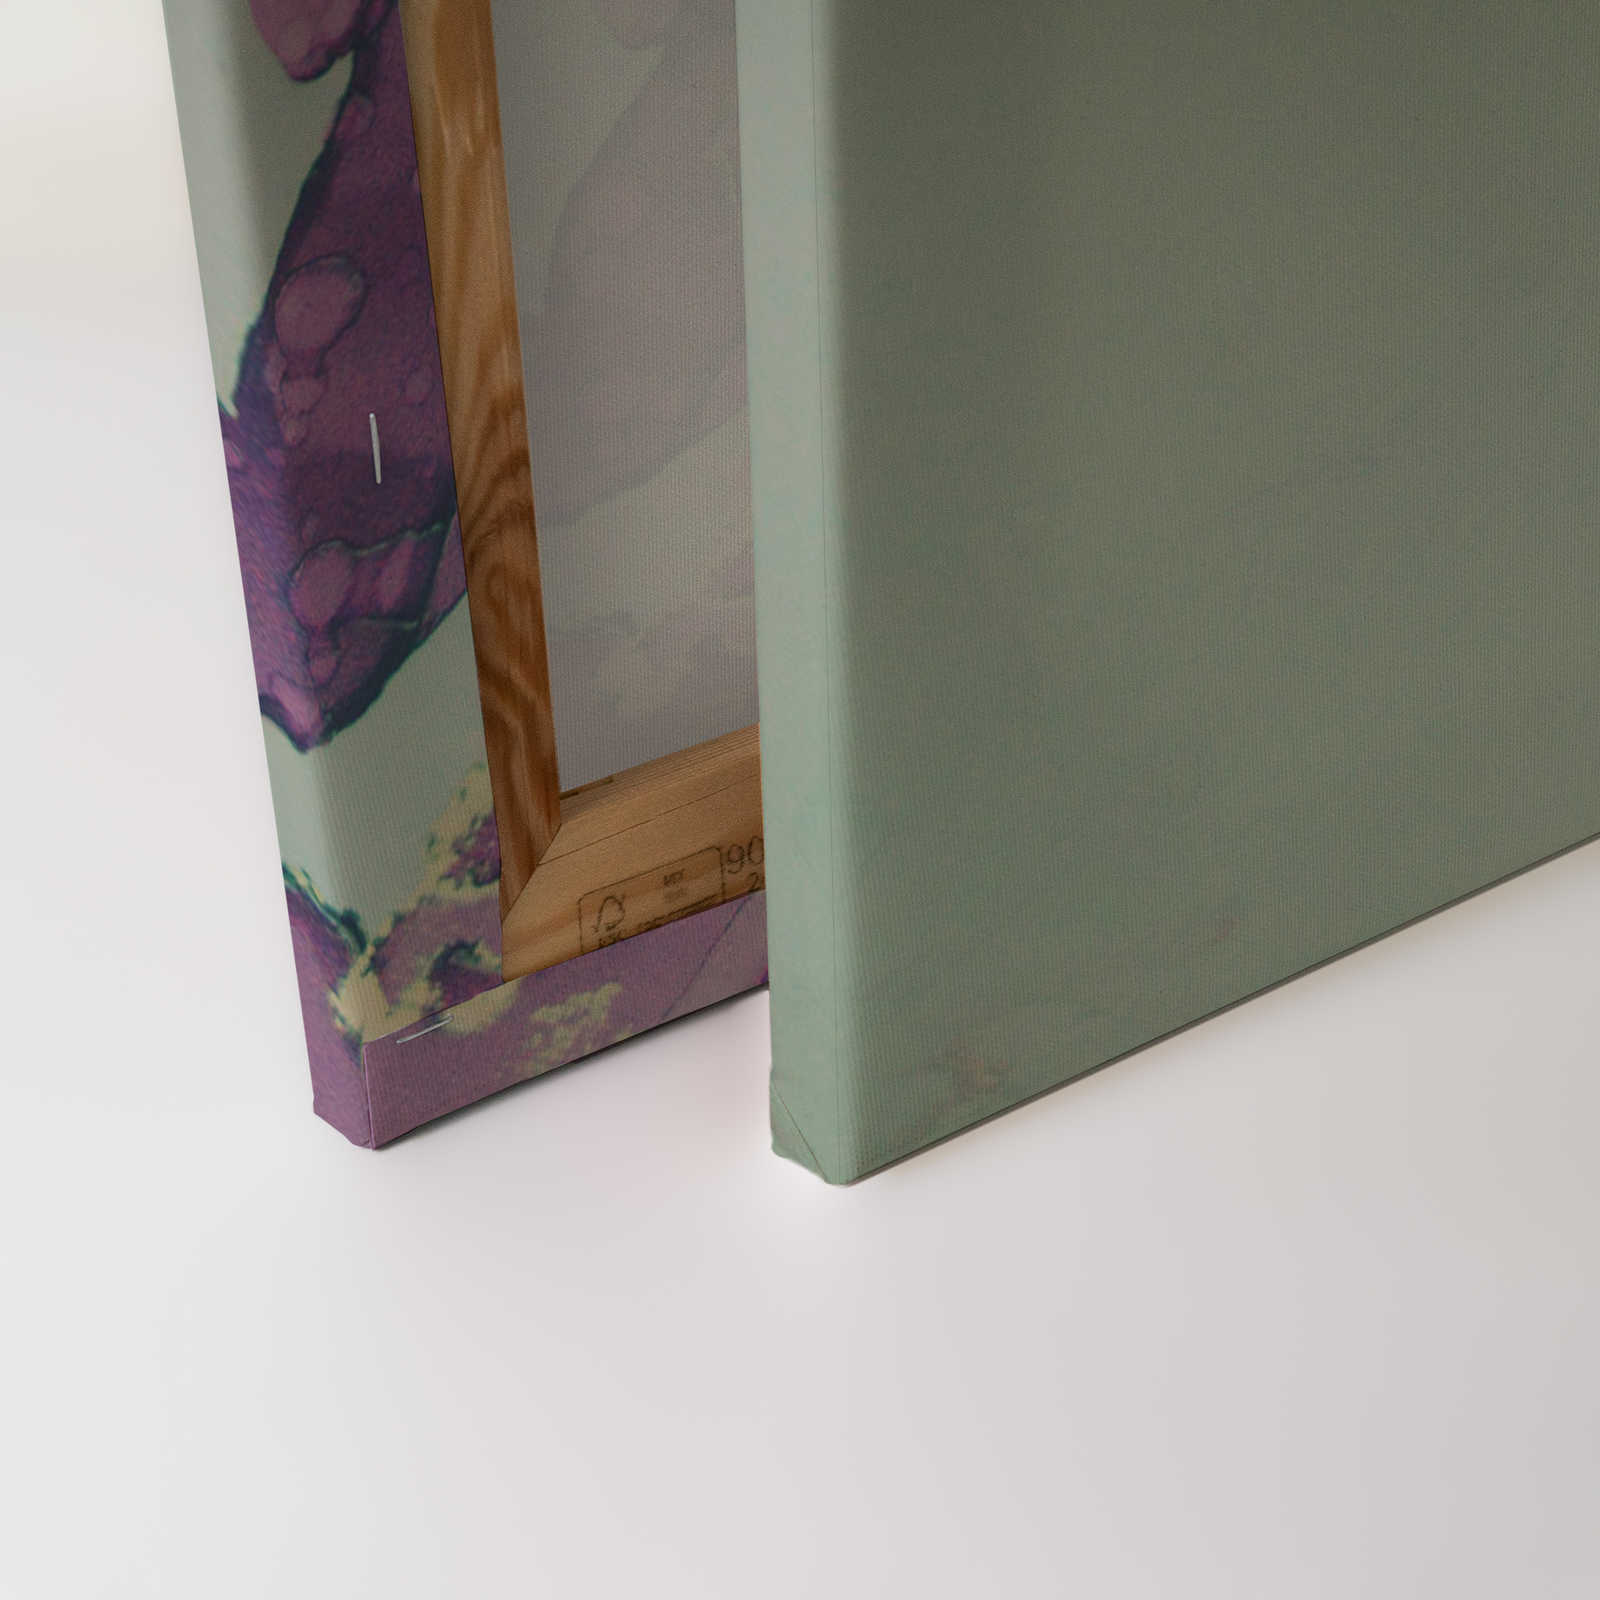             Toiles acryliques Style Visage de femme en turquoise & violet - 1,20 m x 0,80 m
        